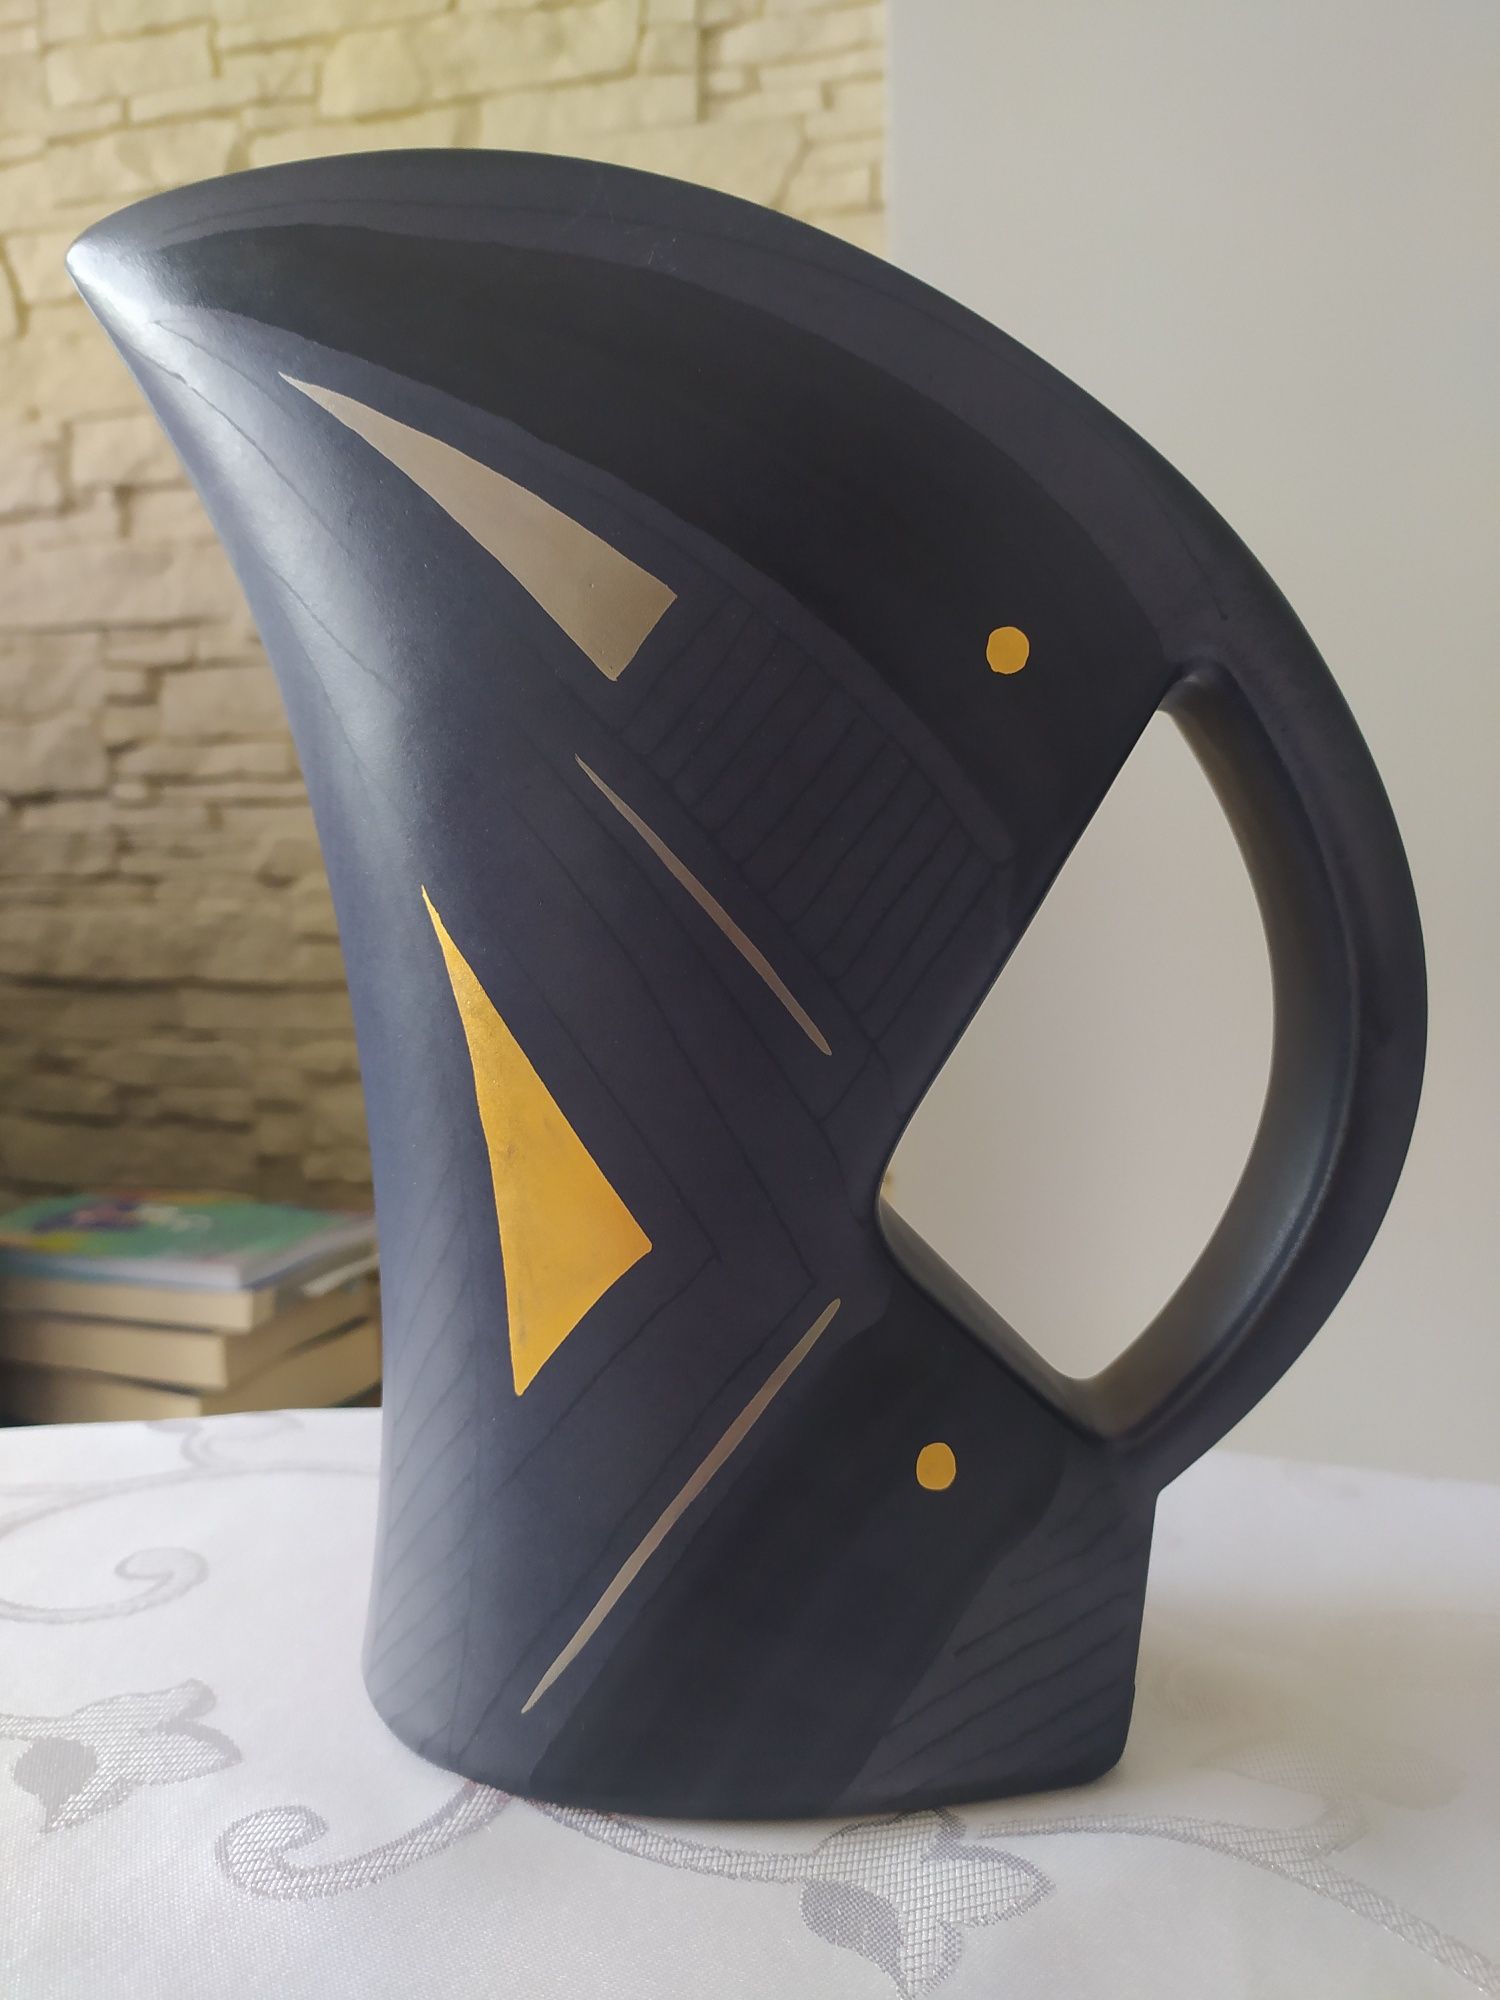 Kolekcjonerski wazon ceramiczny niemieckiej firmy KMK